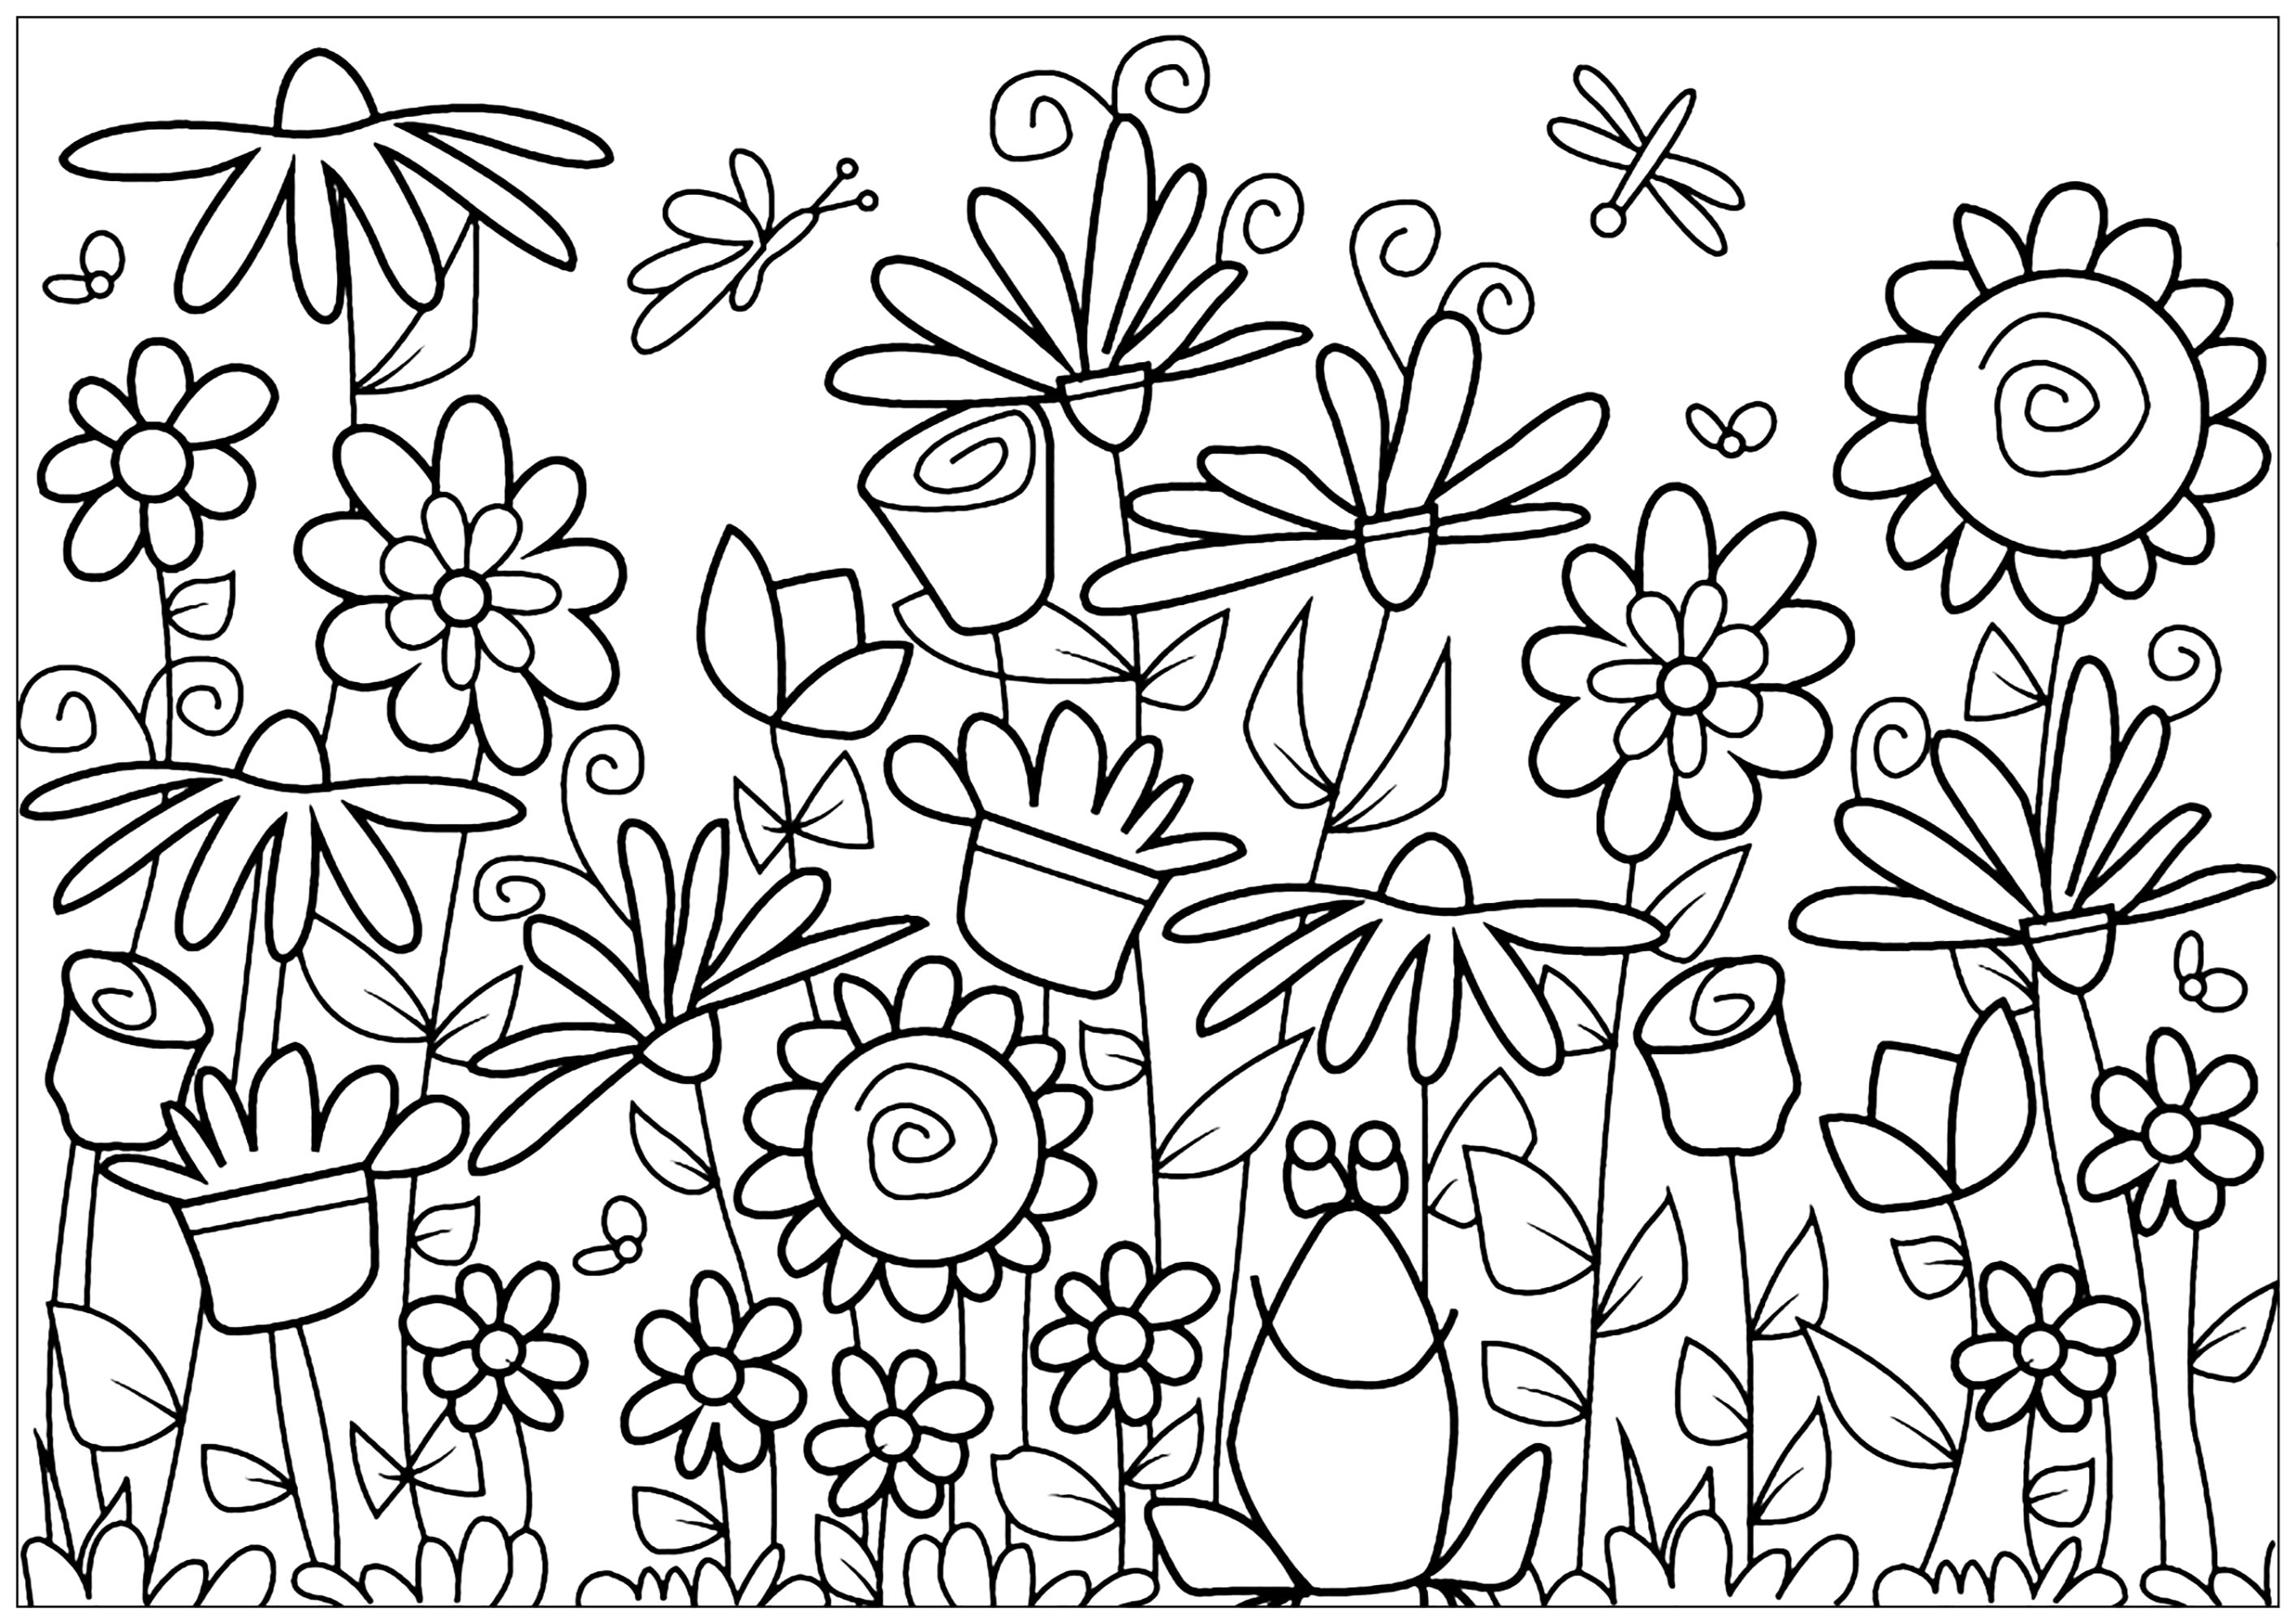 Página para colorir com girassóis gigantes, borboletas, margaridas e tulipas à volta de uma rã